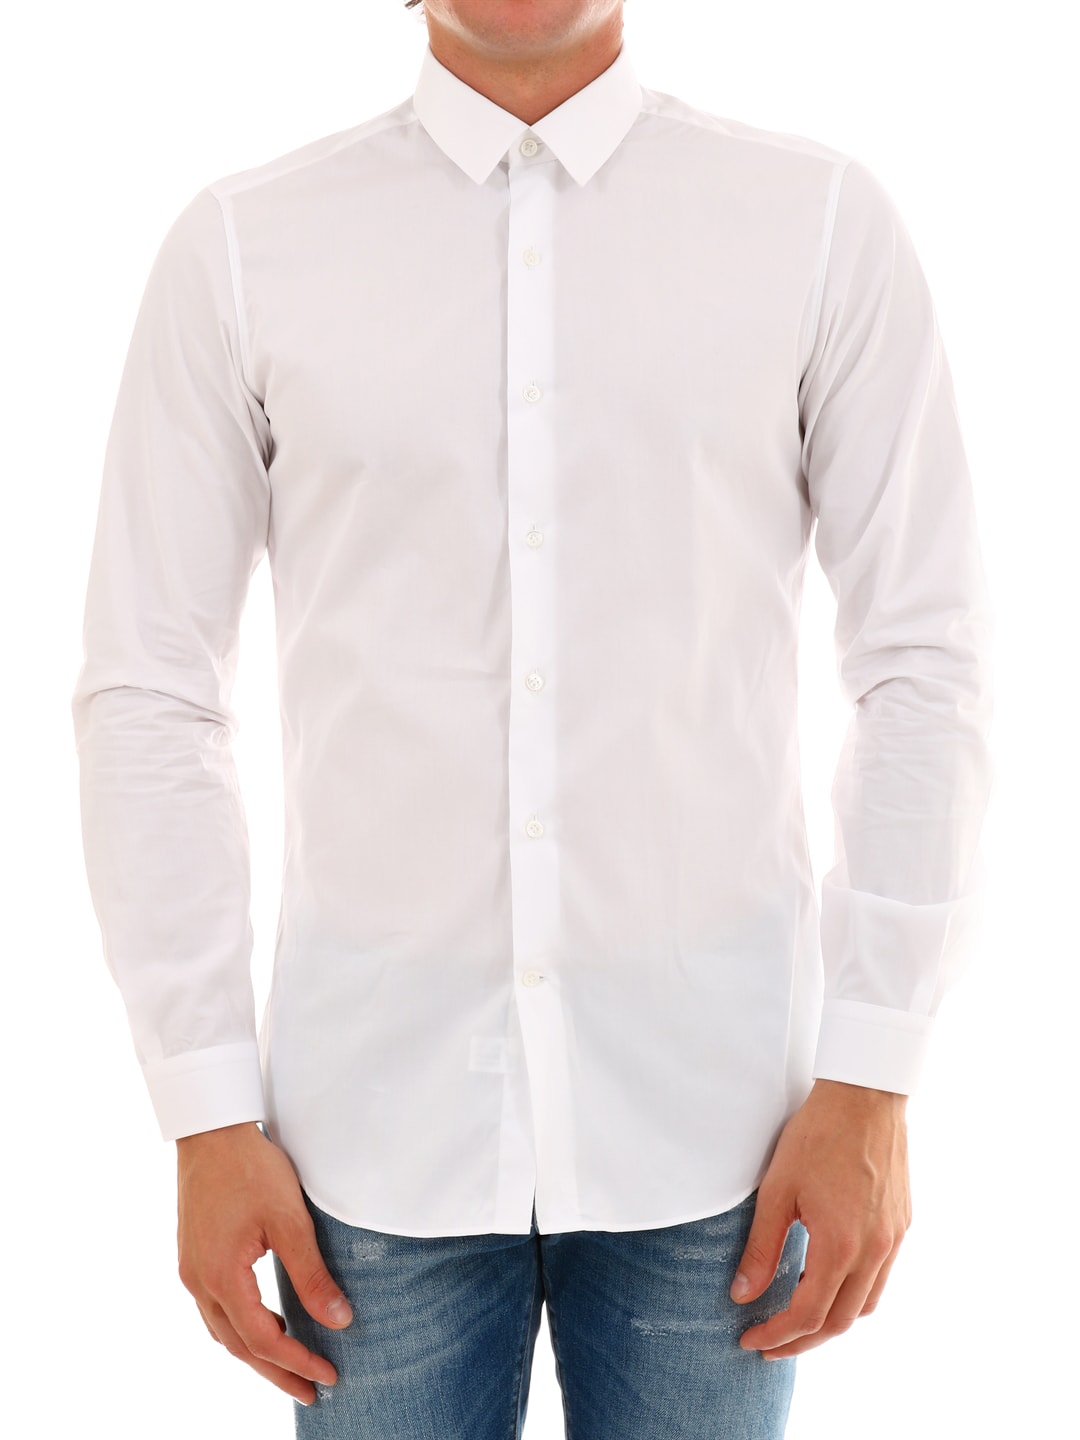 Vangher White Classic Shirt